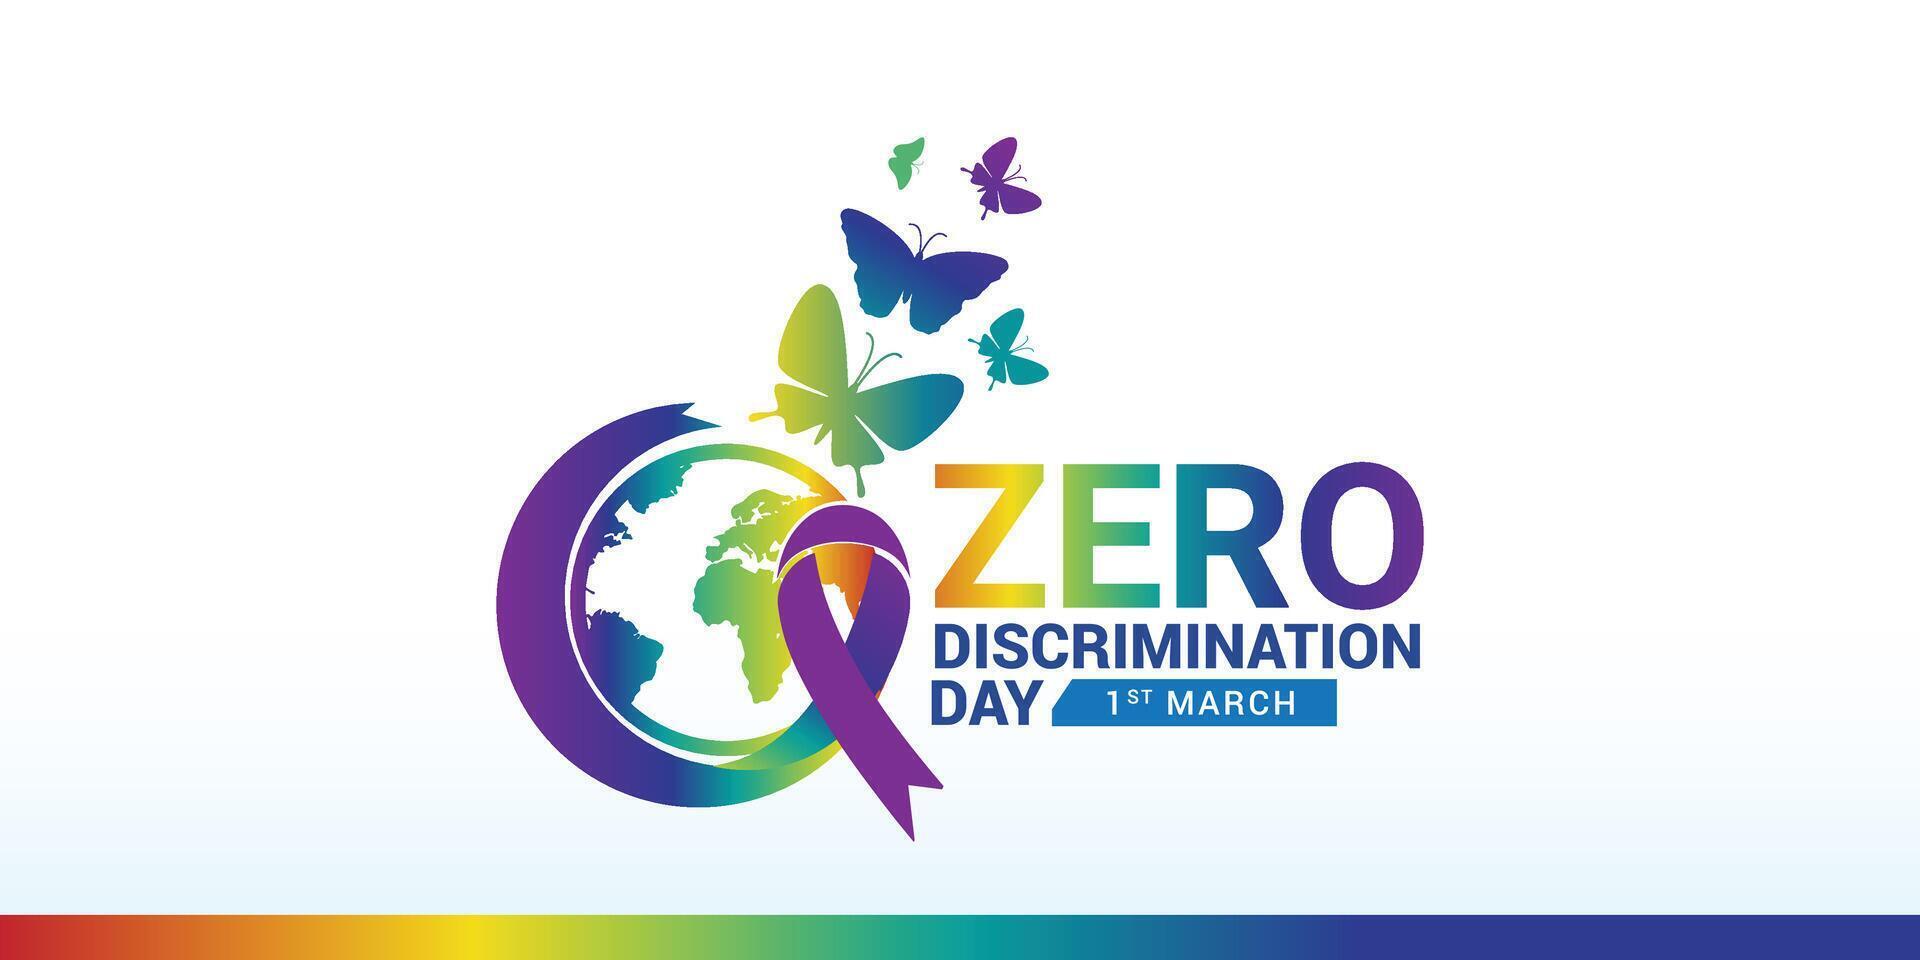 Null Diskriminierung Tag 1 Marsch. Vektor Grafik von Null Diskriminierung Tag gut zum Null Diskriminierung Tag Feier, wir feiern das richtig von jedermann zu Leben ein voll und produktiv Leben